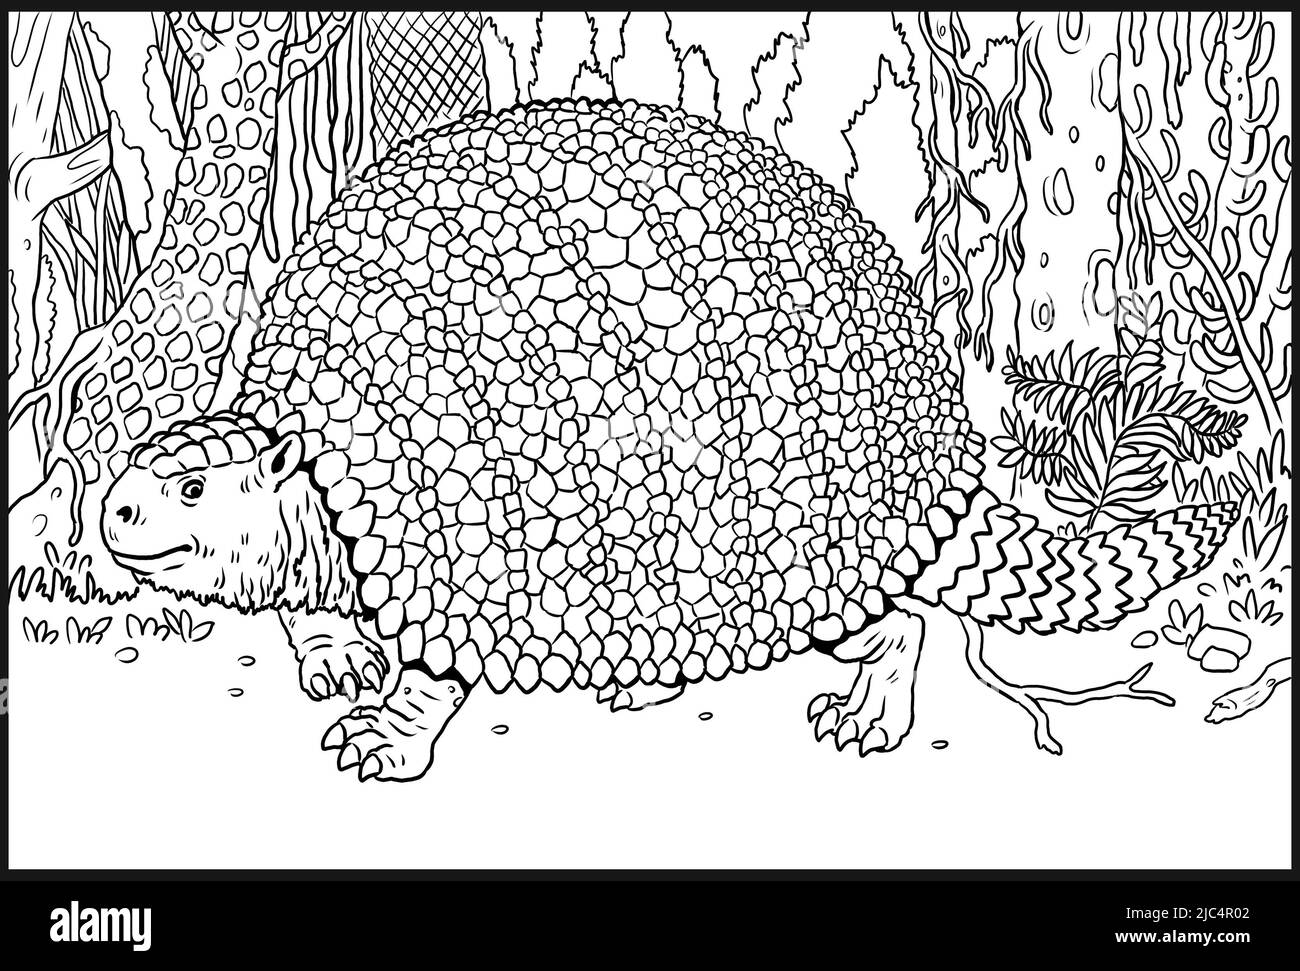 Animaux préhistoriques - glyptodon. Dessin avec des mammifères éteints. Dessin de silhouette pour livre de coloriage. Banque D'Images